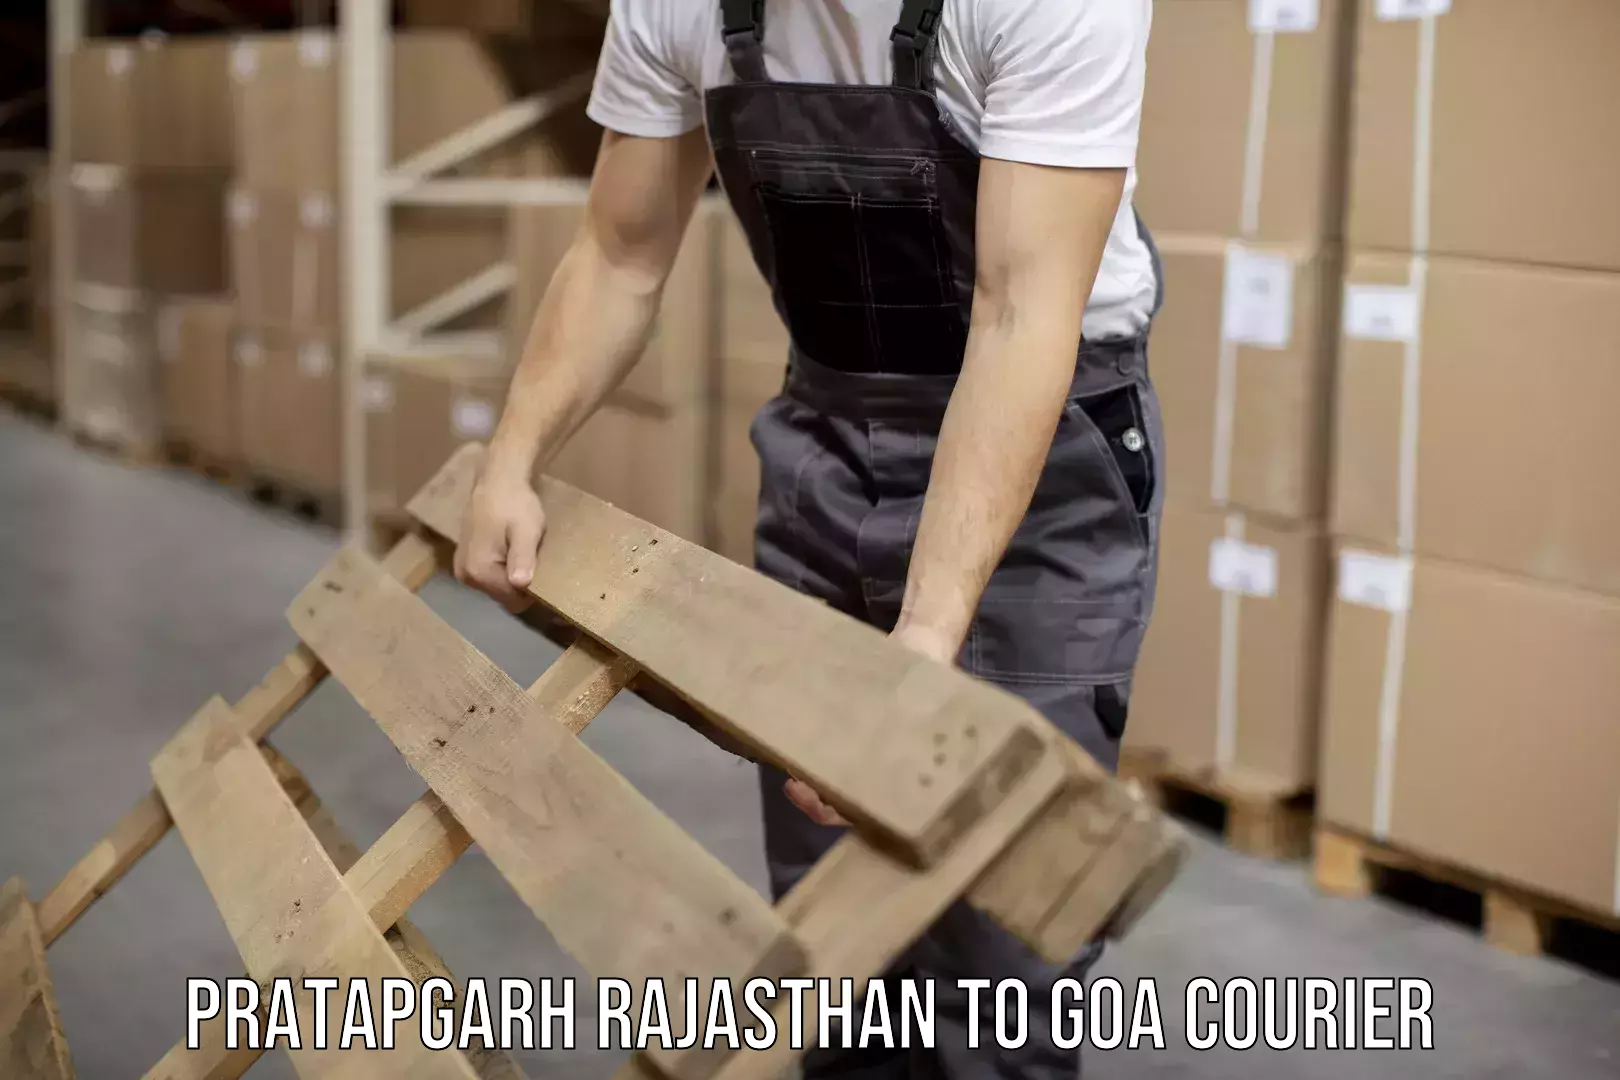 Professional courier handling Pratapgarh Rajasthan to NIT Goa